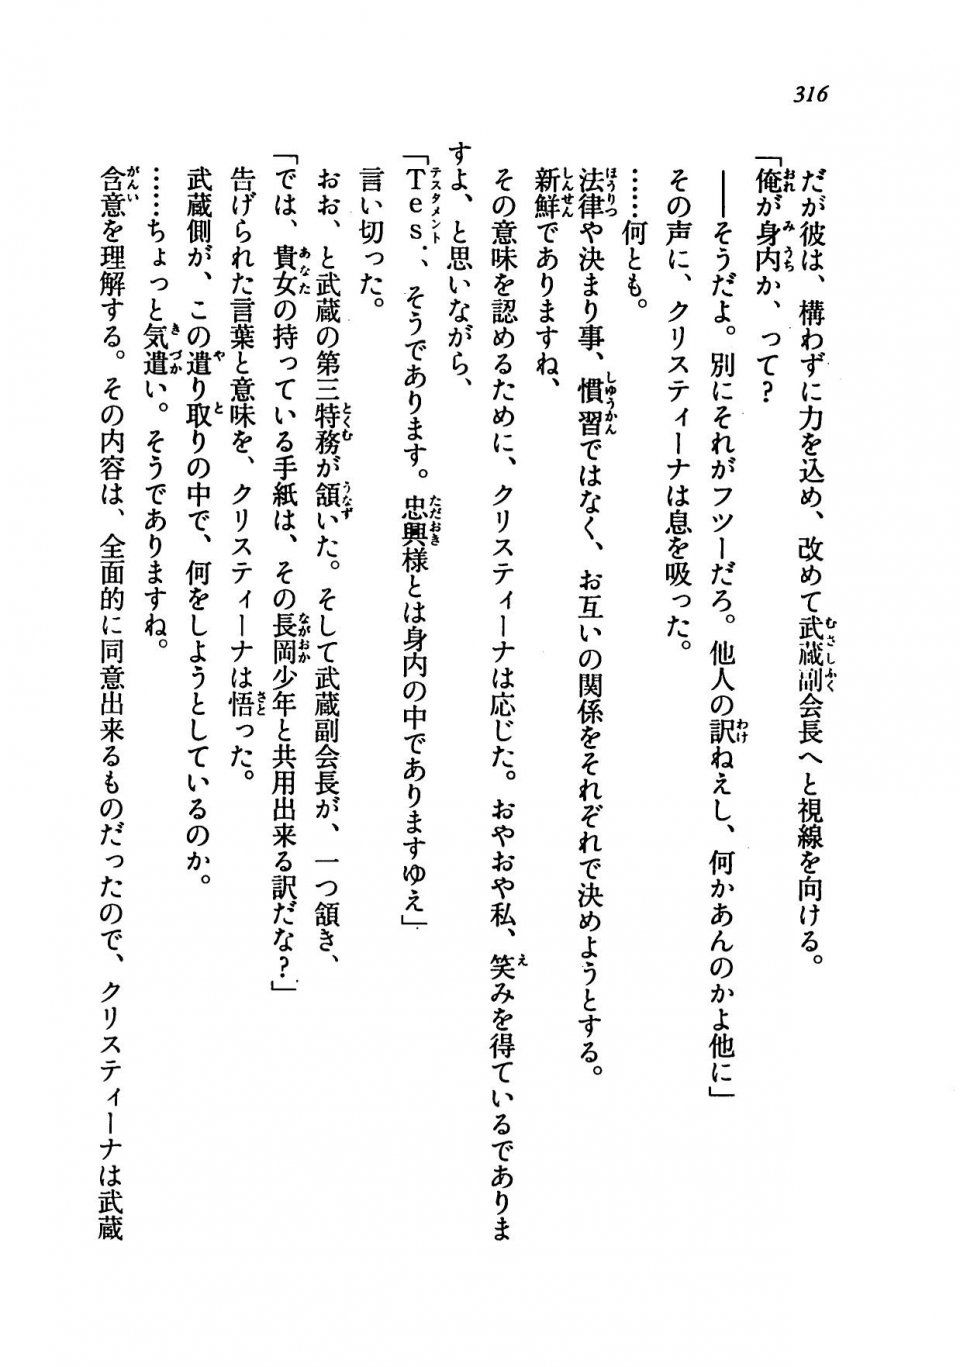 Kyoukai Senjou no Horizon LN Vol 19(8A) - Photo #316